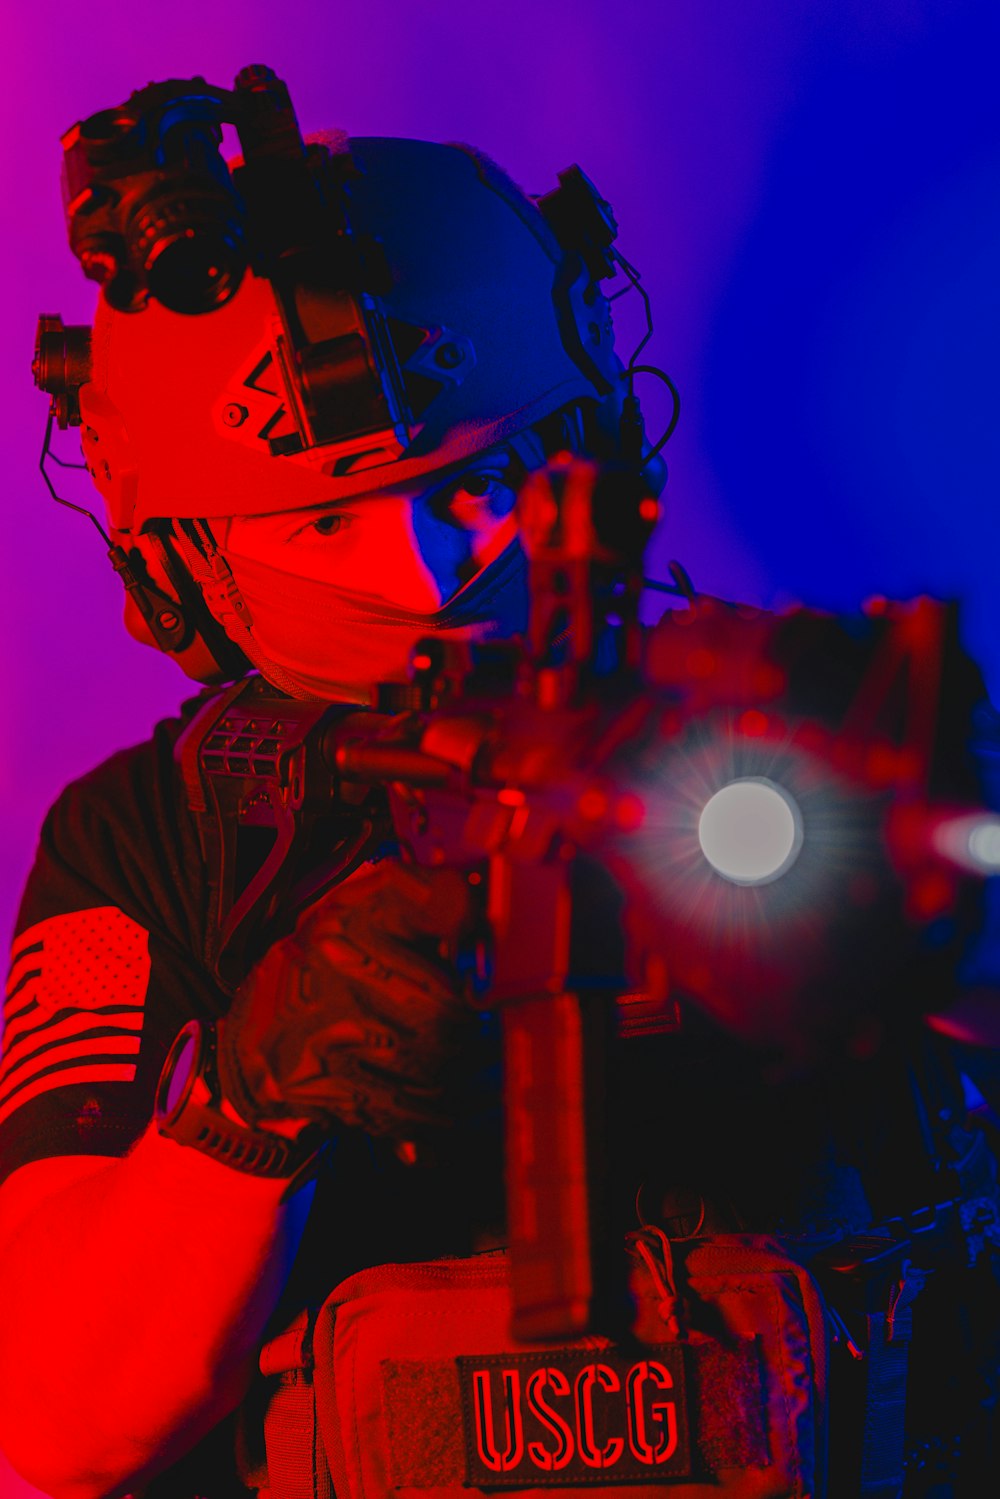 a man wearing a helmet and holding a gun